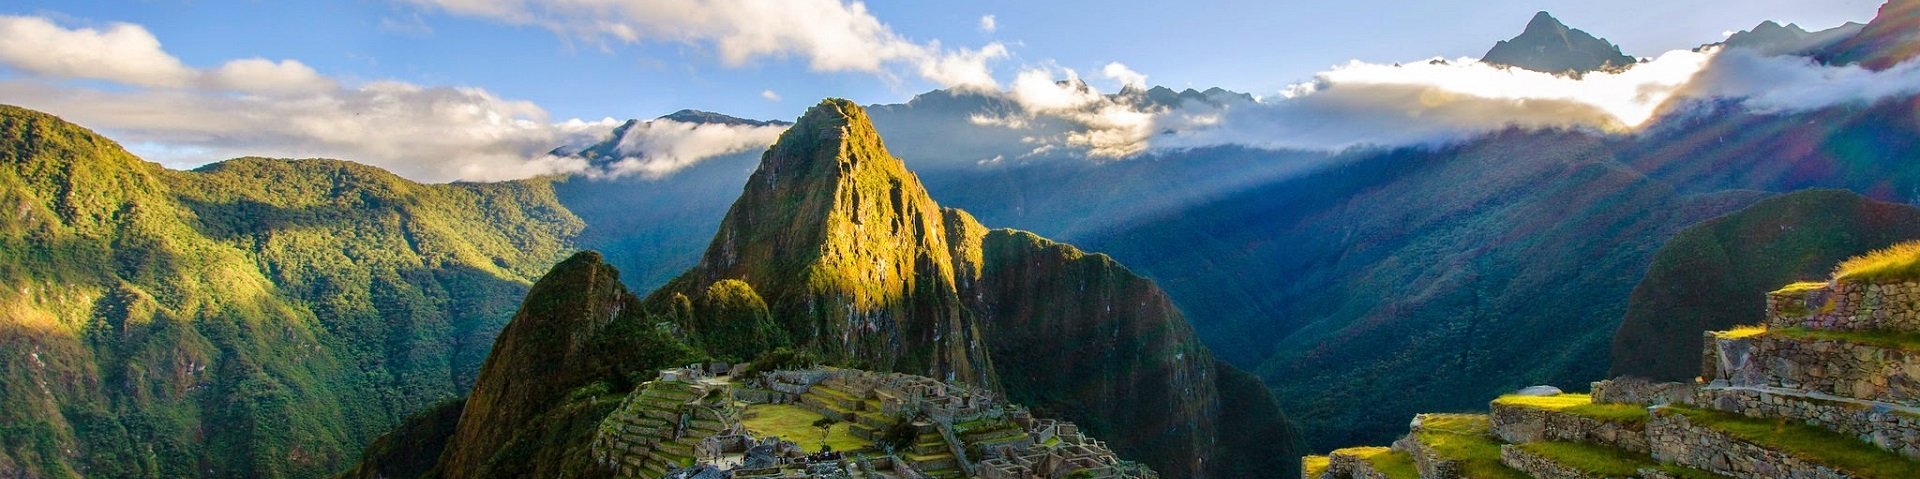 Inkastätte Machu Picchu in der Bergwelt Perus